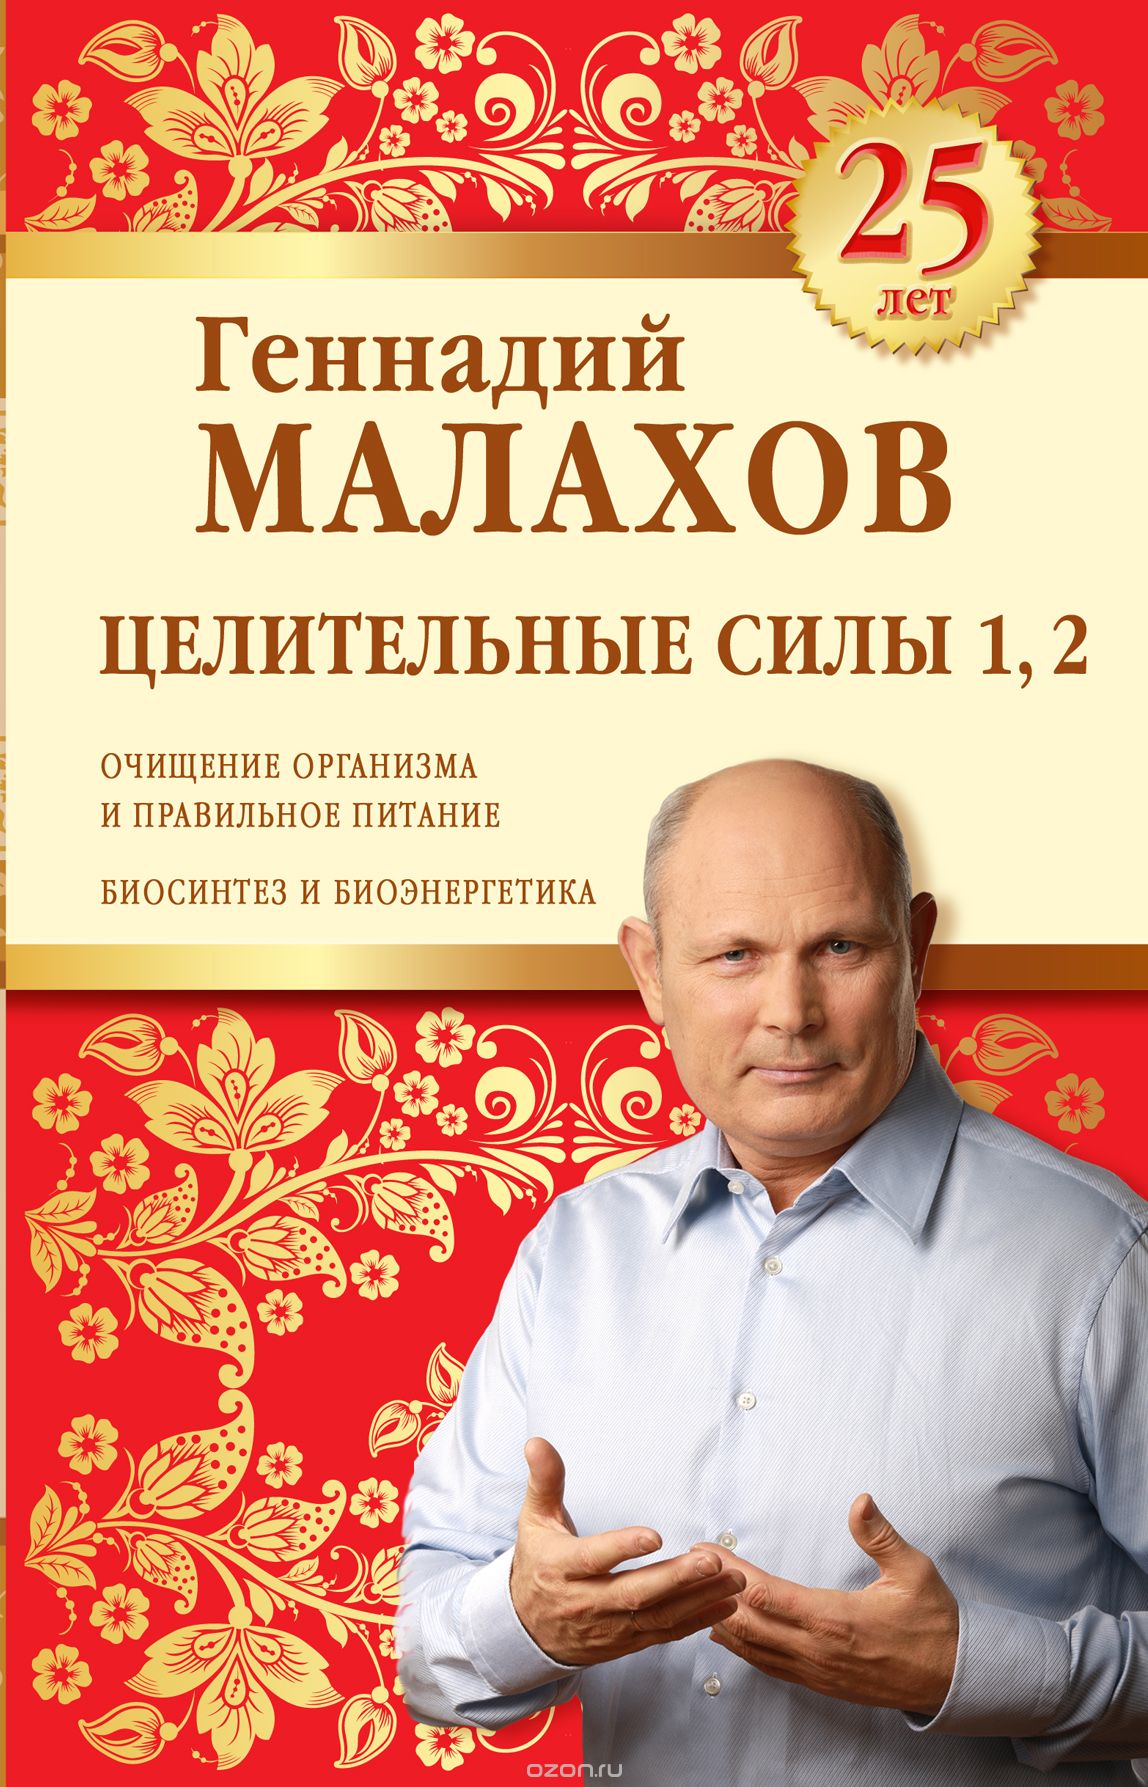 Целительные силы 1, 2. Юбилейное издание, Геннадий Малахов